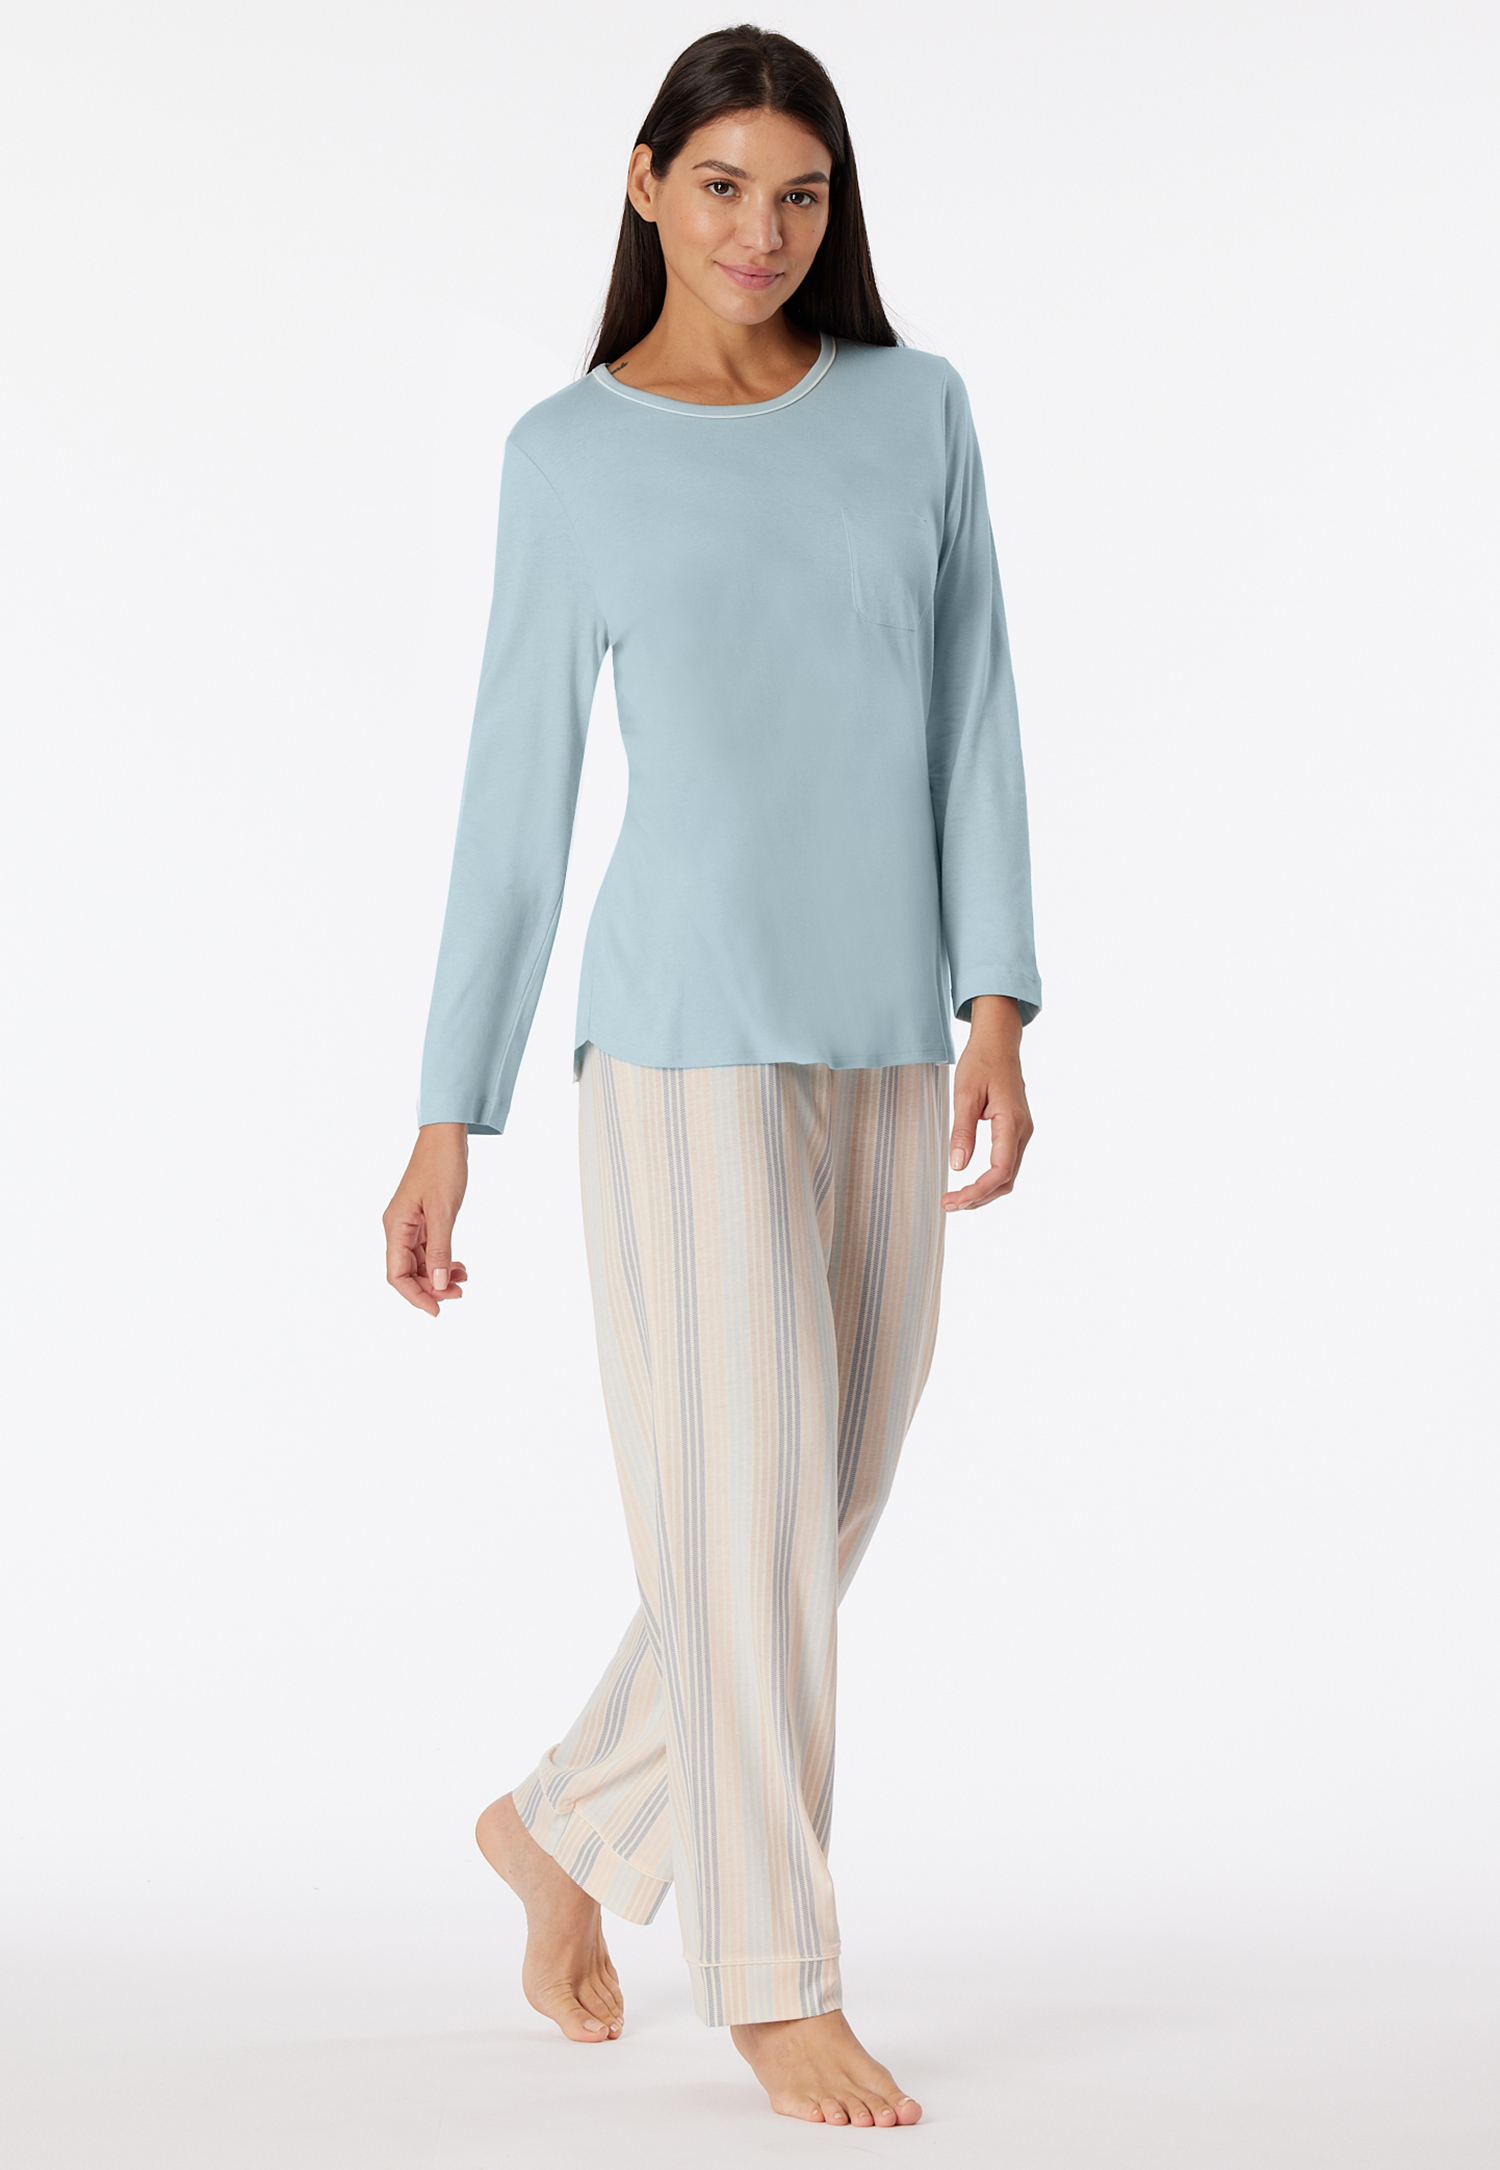 Schlafanzug lang bluebird - Comfort Nightwear 44 von Schiesser